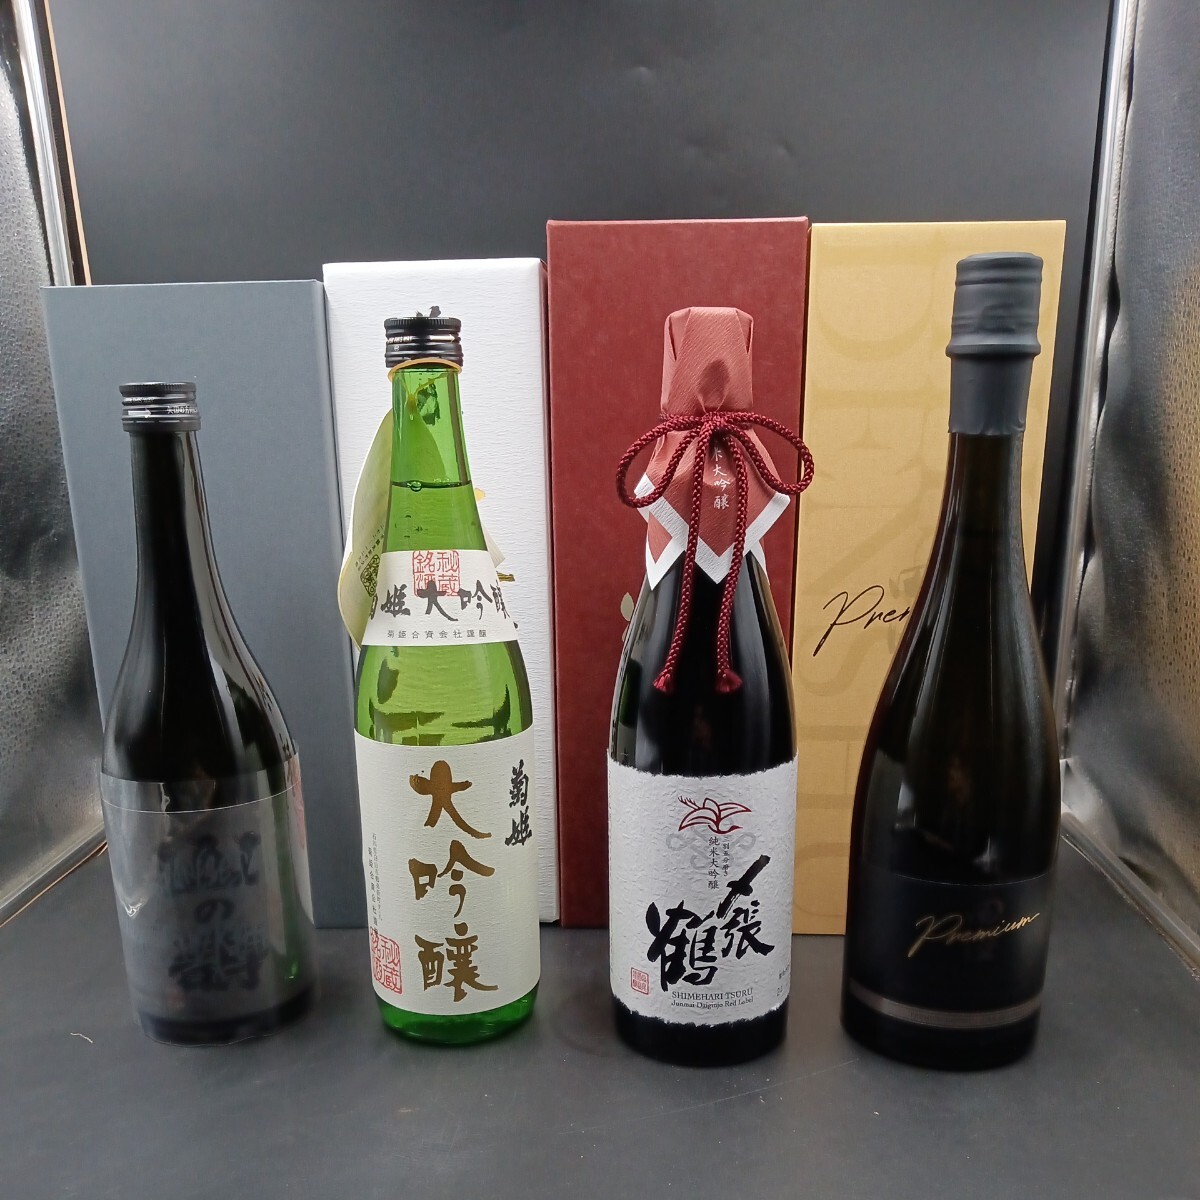 Premium японкое рисовое вино (sake) 720×4 шт. комплект описание товара . запись. способ осуществления сделки ... нет person., обстоятельства покупателя . отмена.. включение в покупку не возможно.